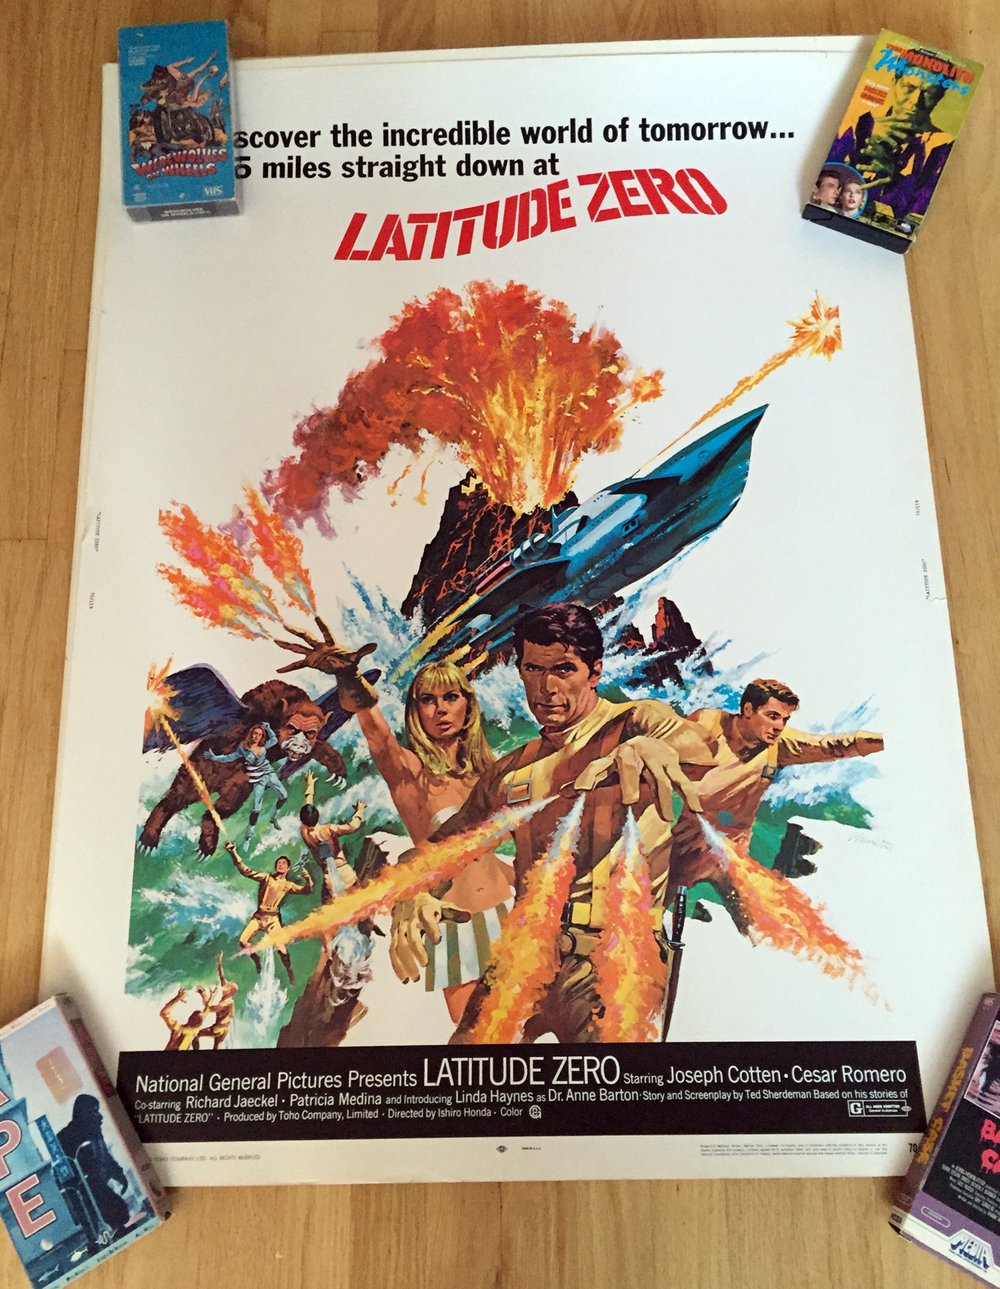 1970 LADITUDE ZERO Original 30 x 40" Movie Poster